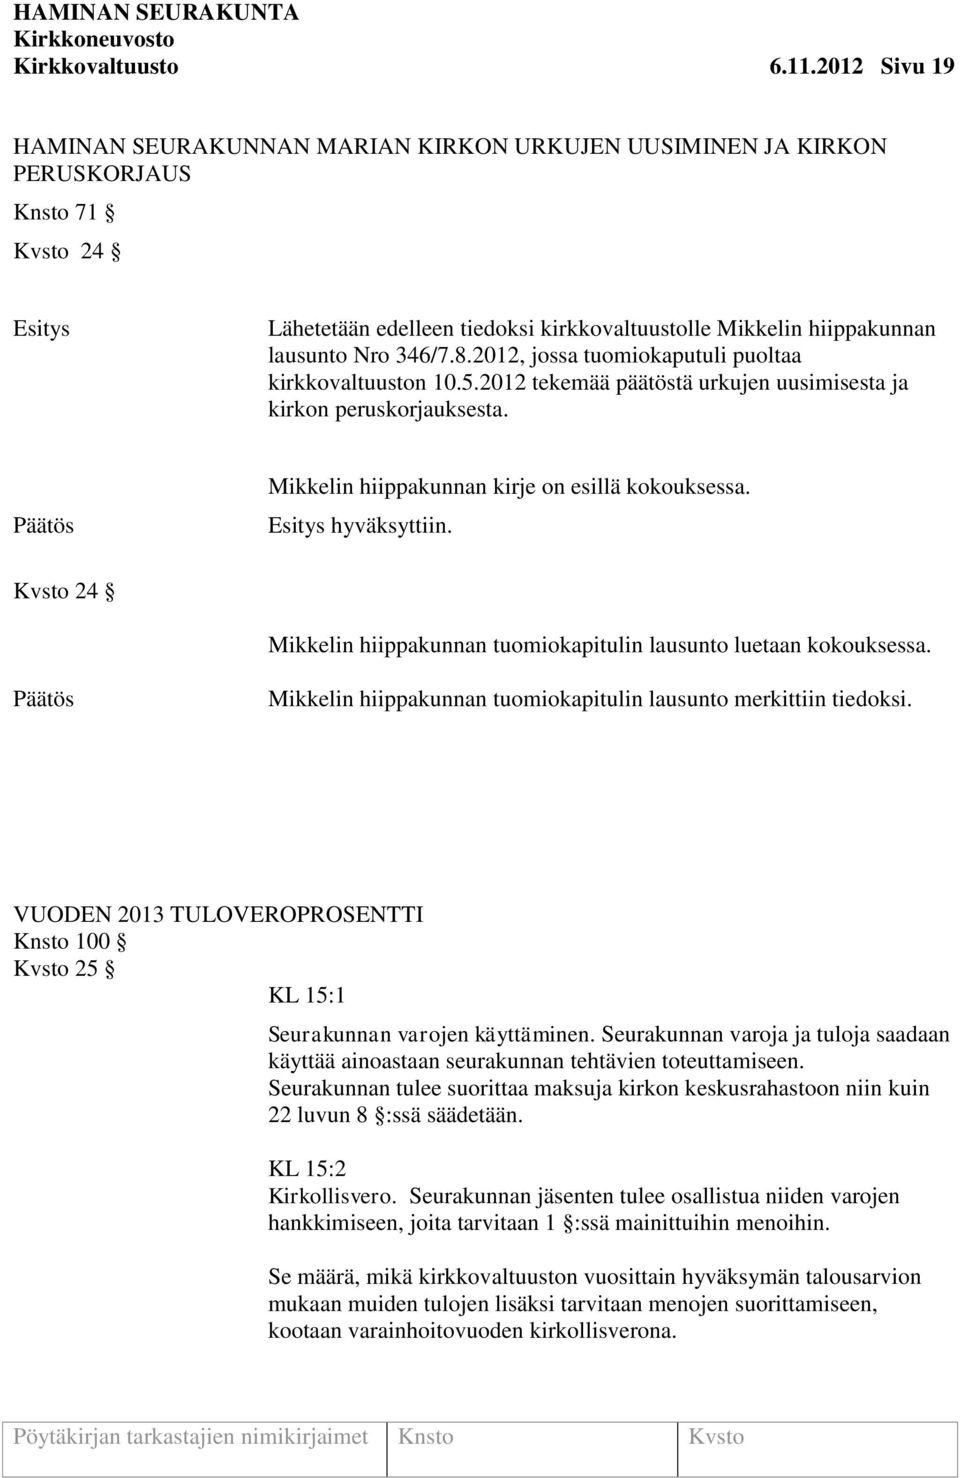 2012, jossa tuomiokaputuli puoltaa kirkkovaltuuston 10.5.2012 tekemää päätöstä urkujen uusimisesta ja kirkon peruskorjauksesta. Mikkelin hiippakunnan kirje on esillä kokouksessa. hyväksyttiin.